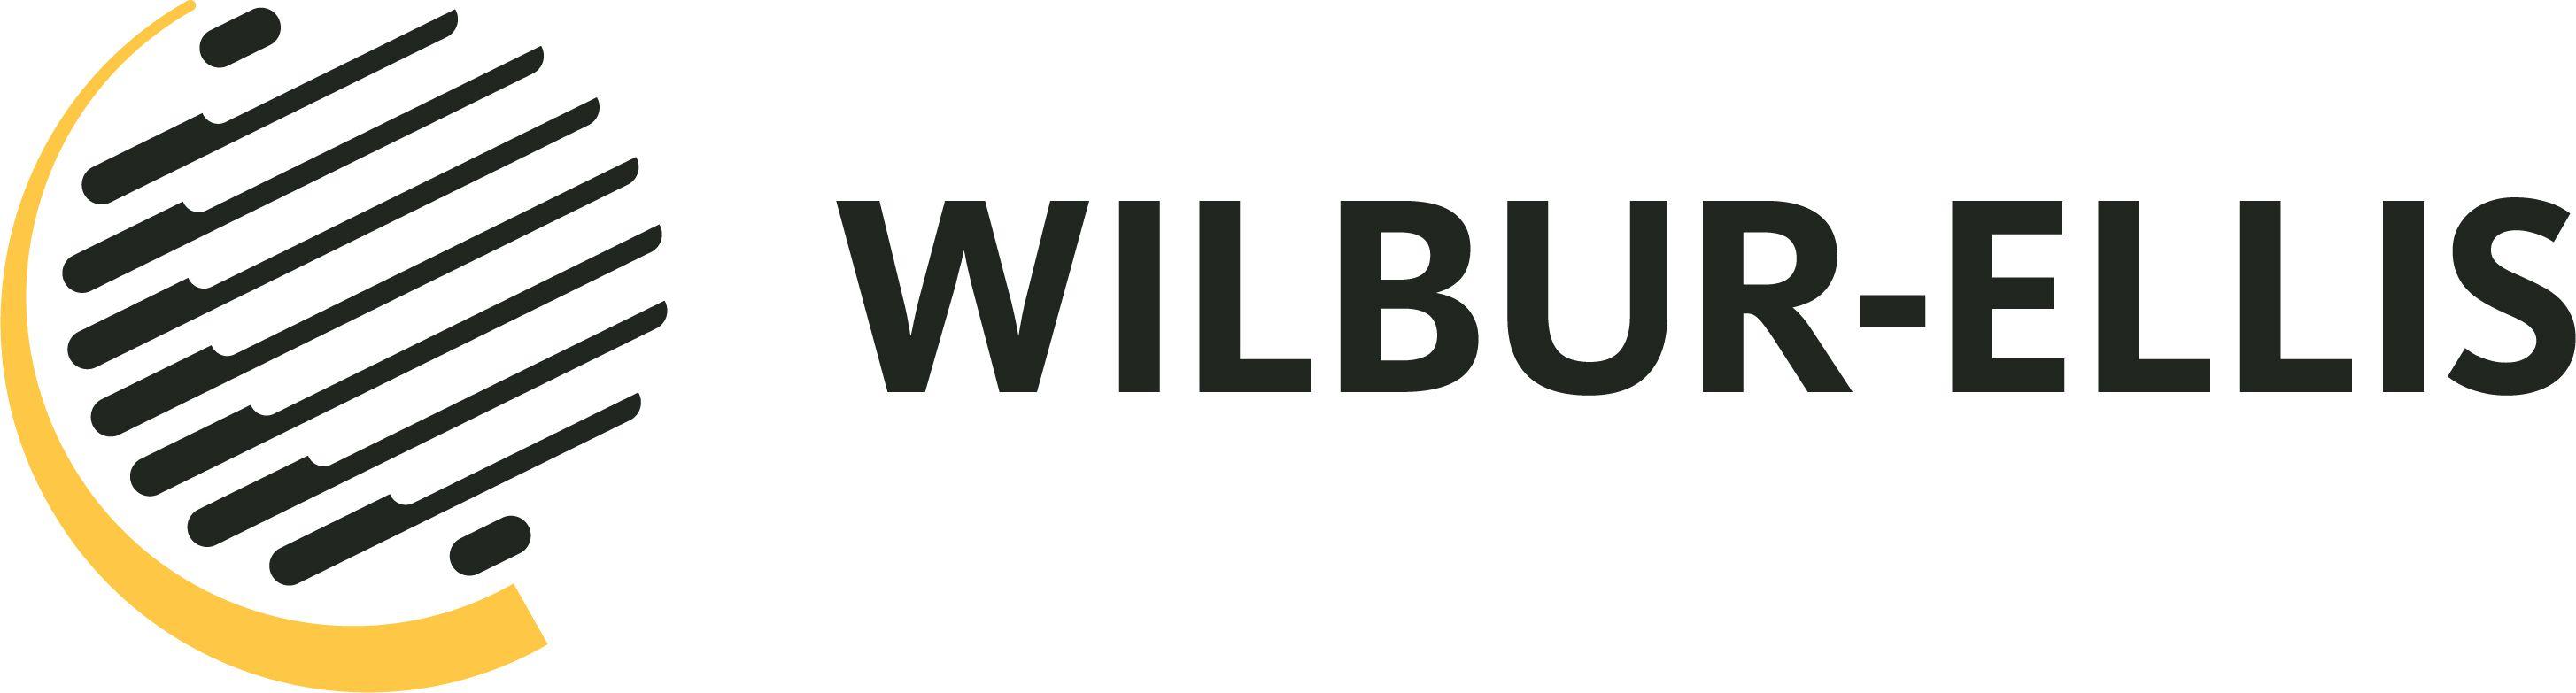 Purpose Logo - New Purpose, New Logo. One Wilbur-Ellis. - Wilbur-Ellis Corporate